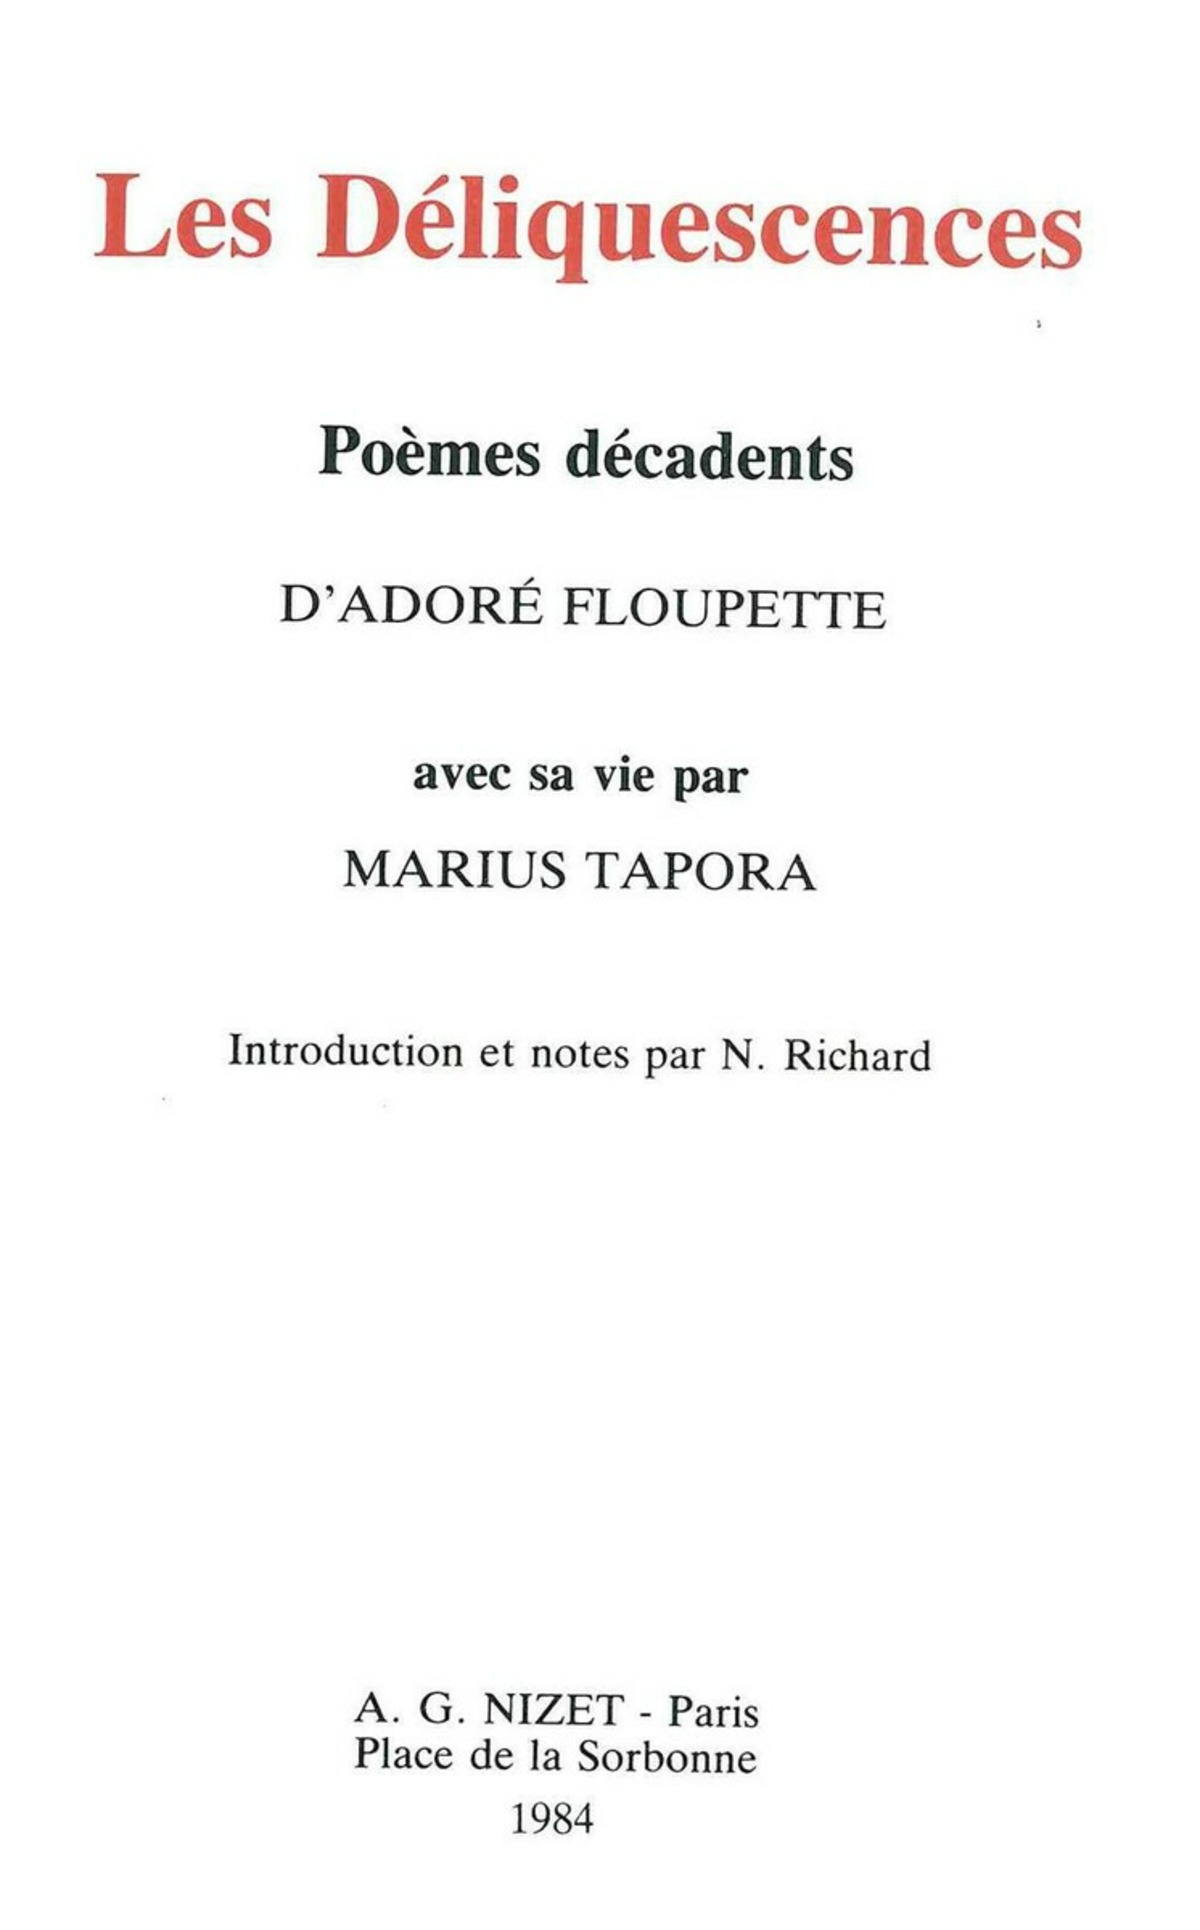 Les Déliquescences, poèmes décadents d'Adoré Floupette